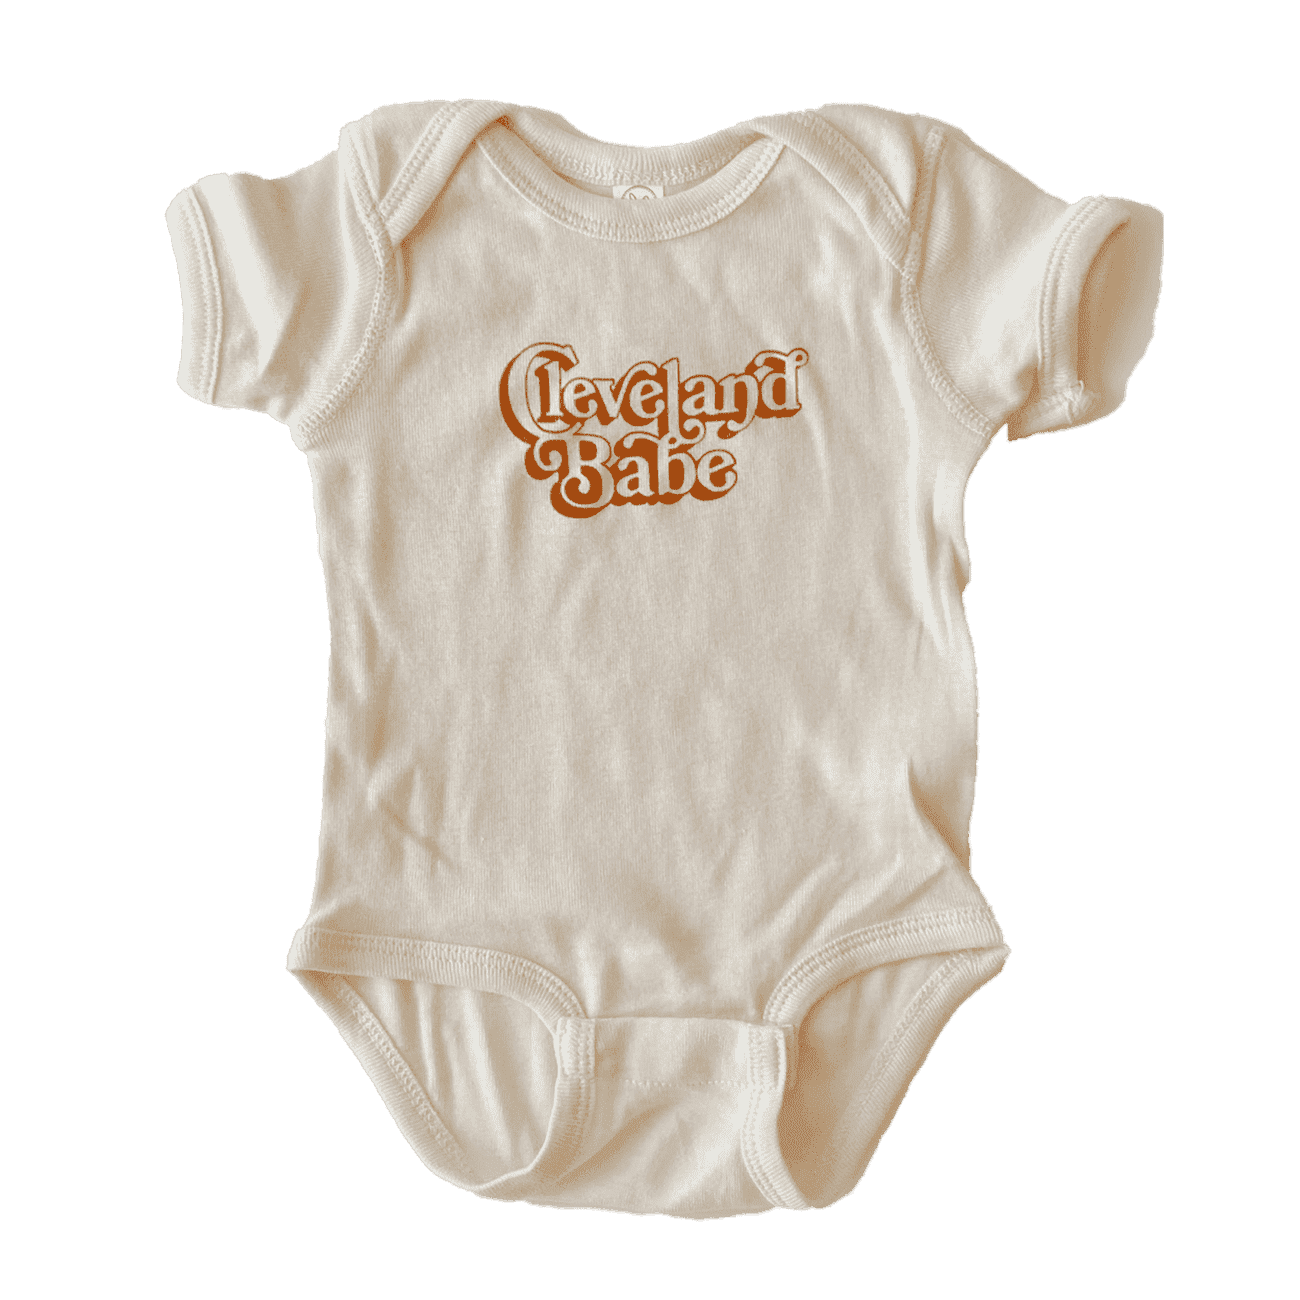 Cleveland Babe Onesie Babies + Kids